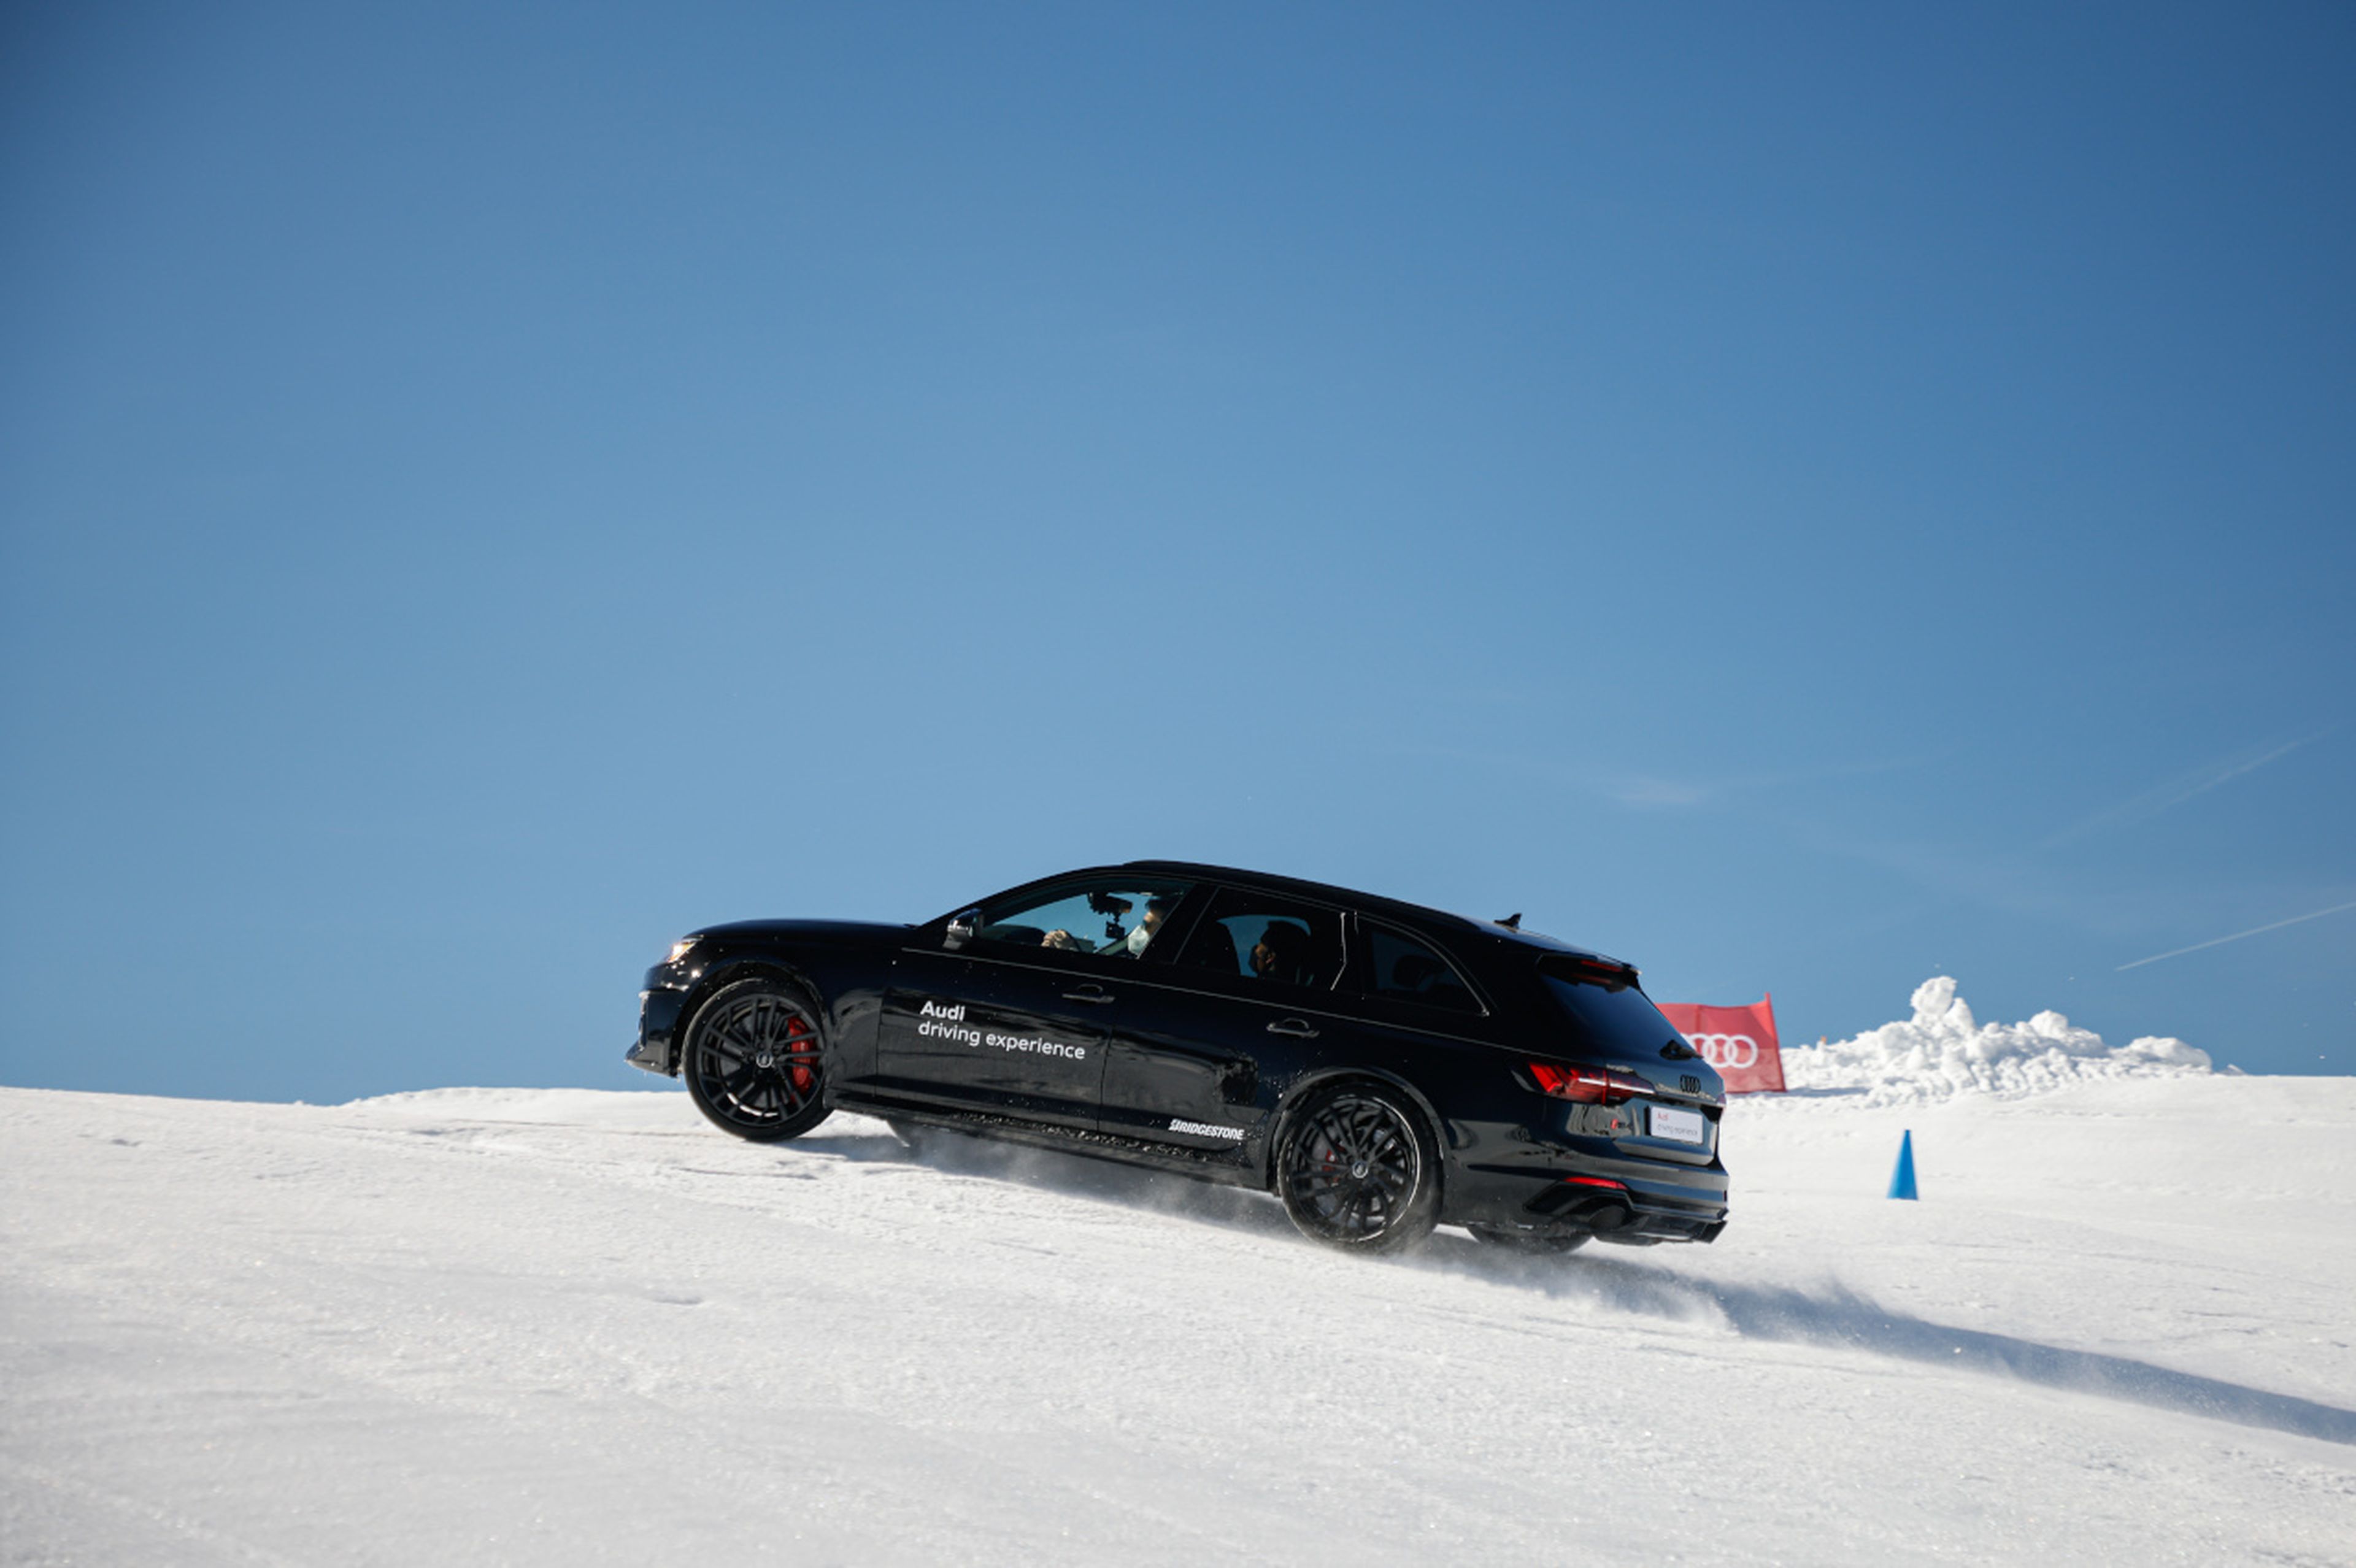 Otro desafío para los coches: subir una cuesta nevada. Pisar a tope el acelerador es fundamental